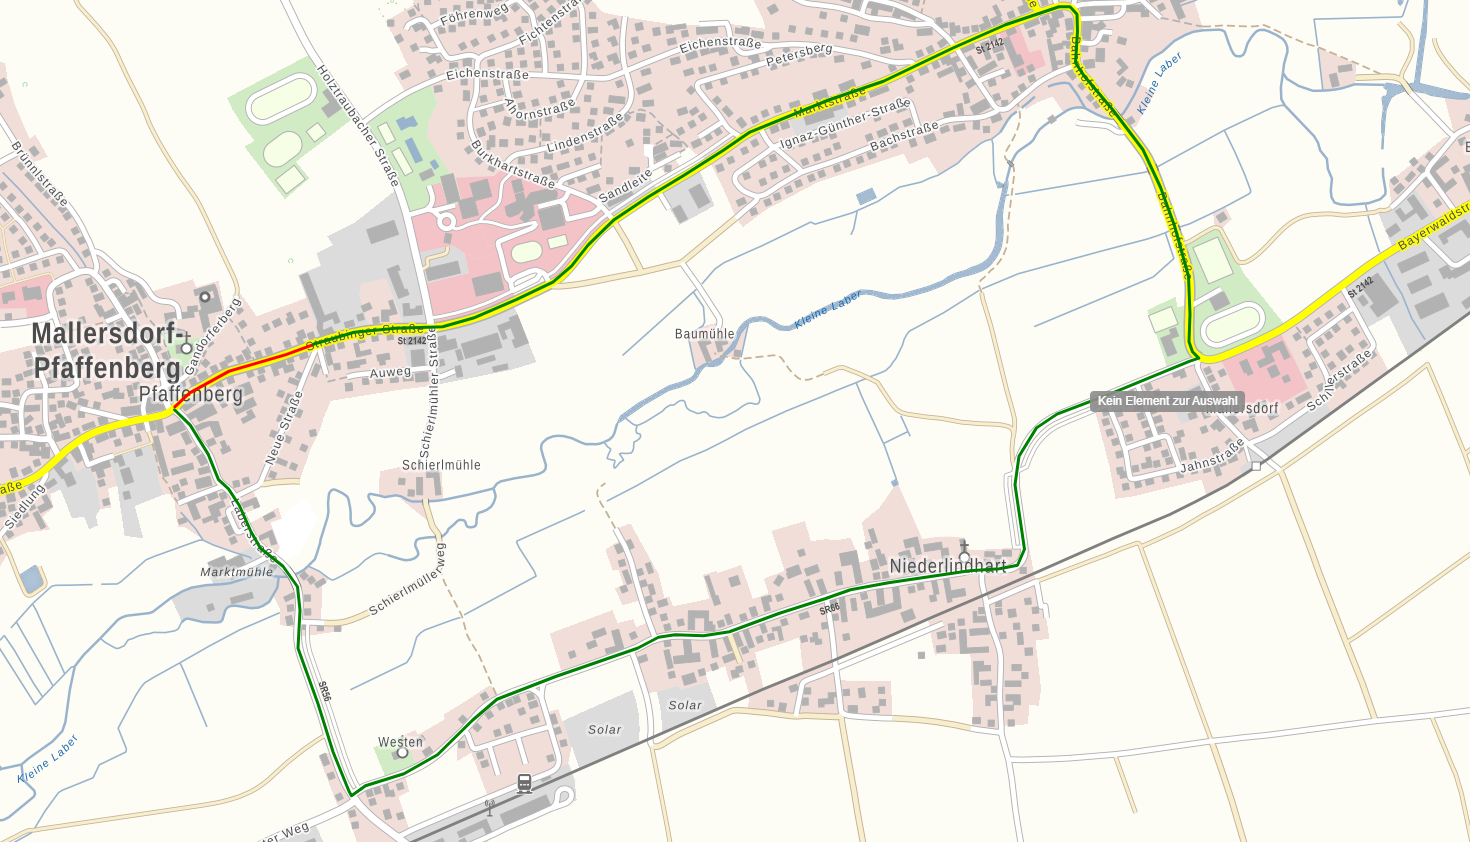 Sperrung der Staatsstraße St 2142 in Mallersdorf-Pfaffenberg ab 22. August